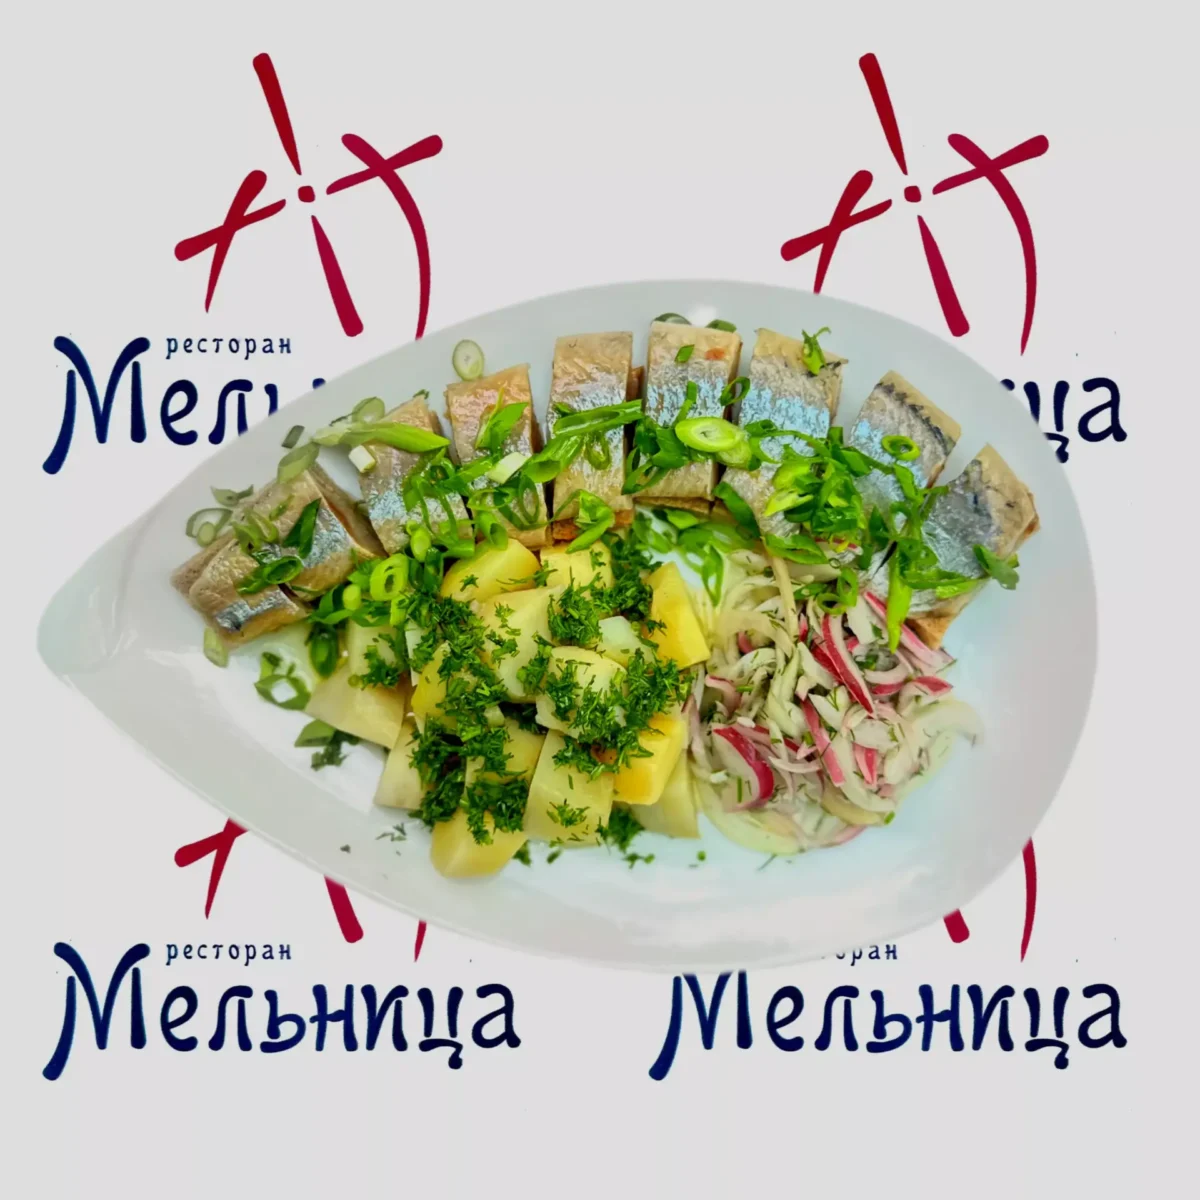 Homemade herring • "Melnitsa" restaurant, Kharkiv